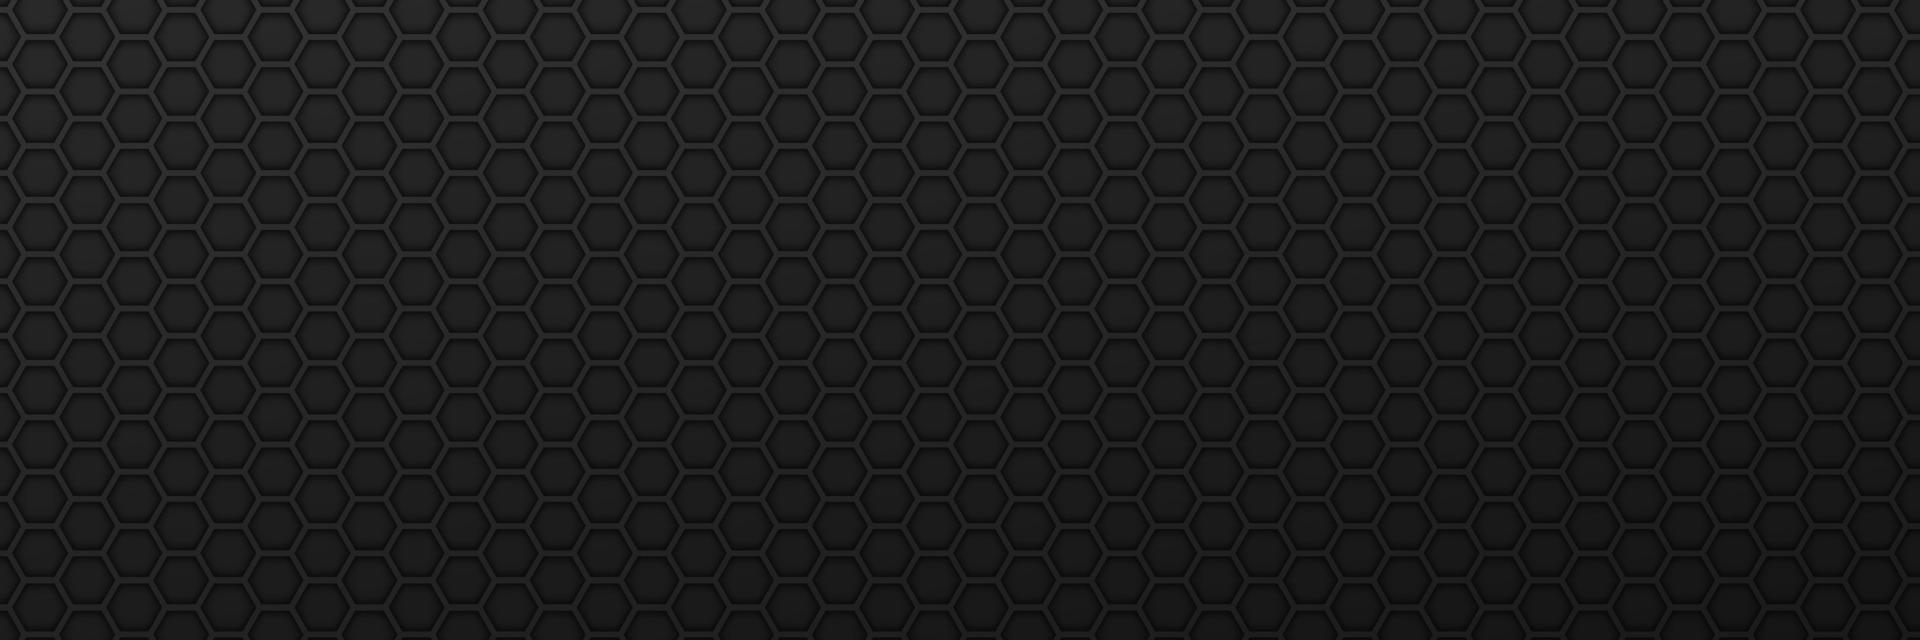 geometrische Hexagone verzieren Hintergrund. Schwarze Carbon-Zahnräder mit industriellem Techno-Maßwerk und abstrakter monochromer Vektoroberfläche vektor